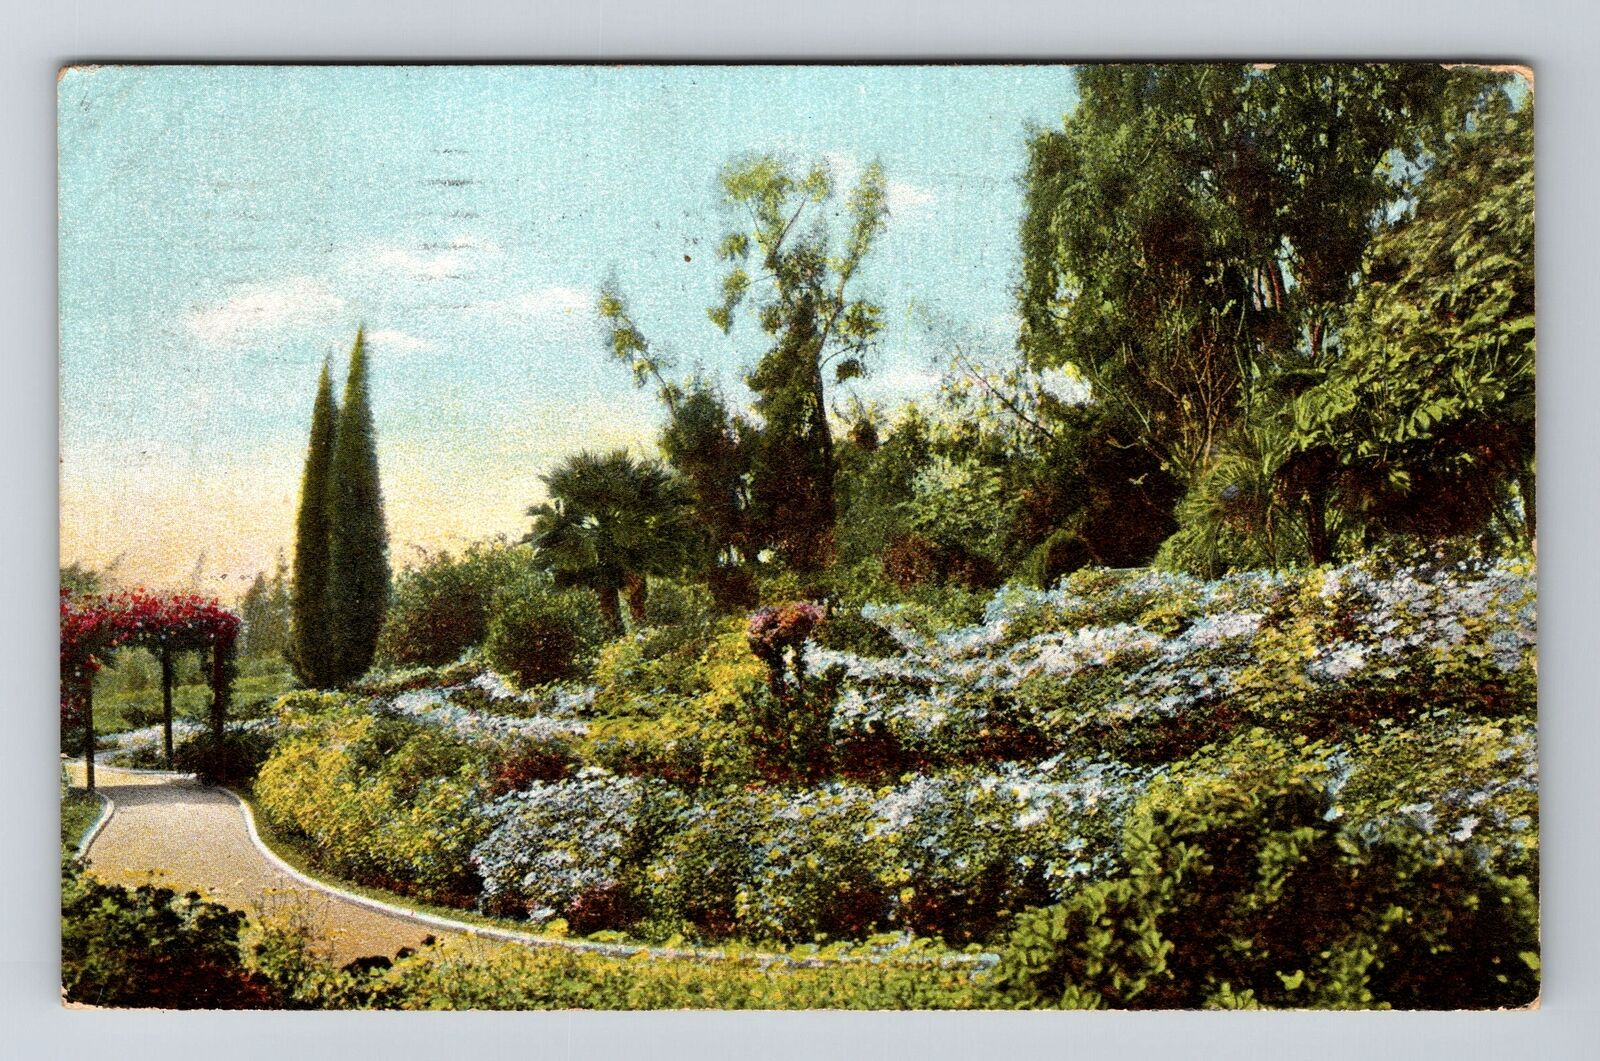 CA-California, Marguerites In A California Garden, Vintage c1911 Postcard